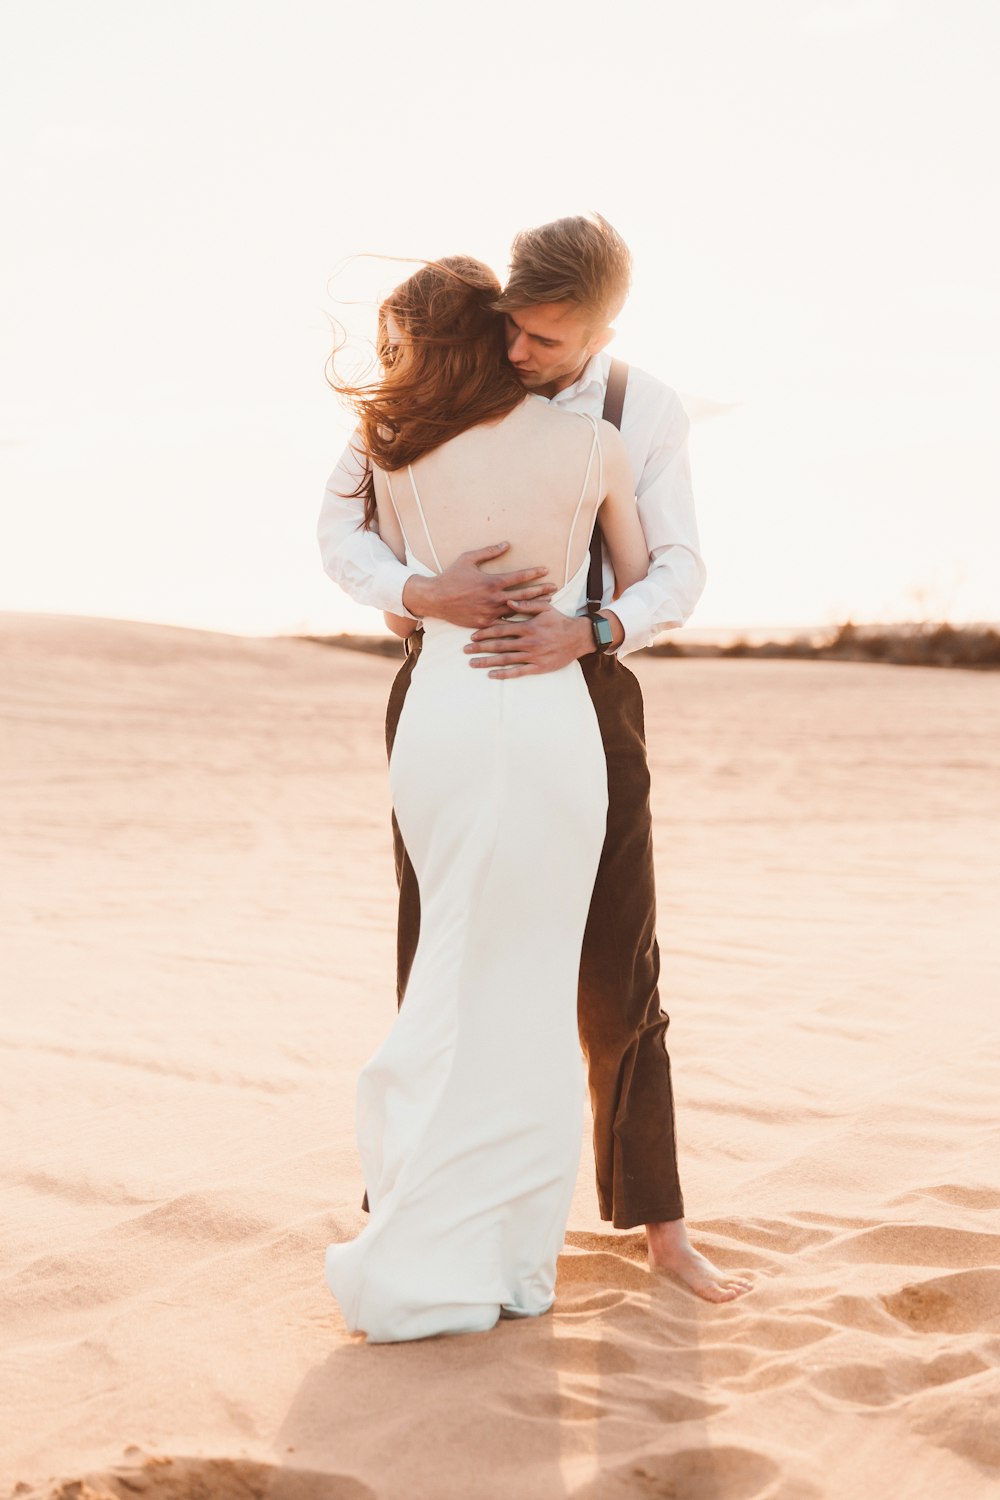 Paar umarmt sich auf Wüstensand